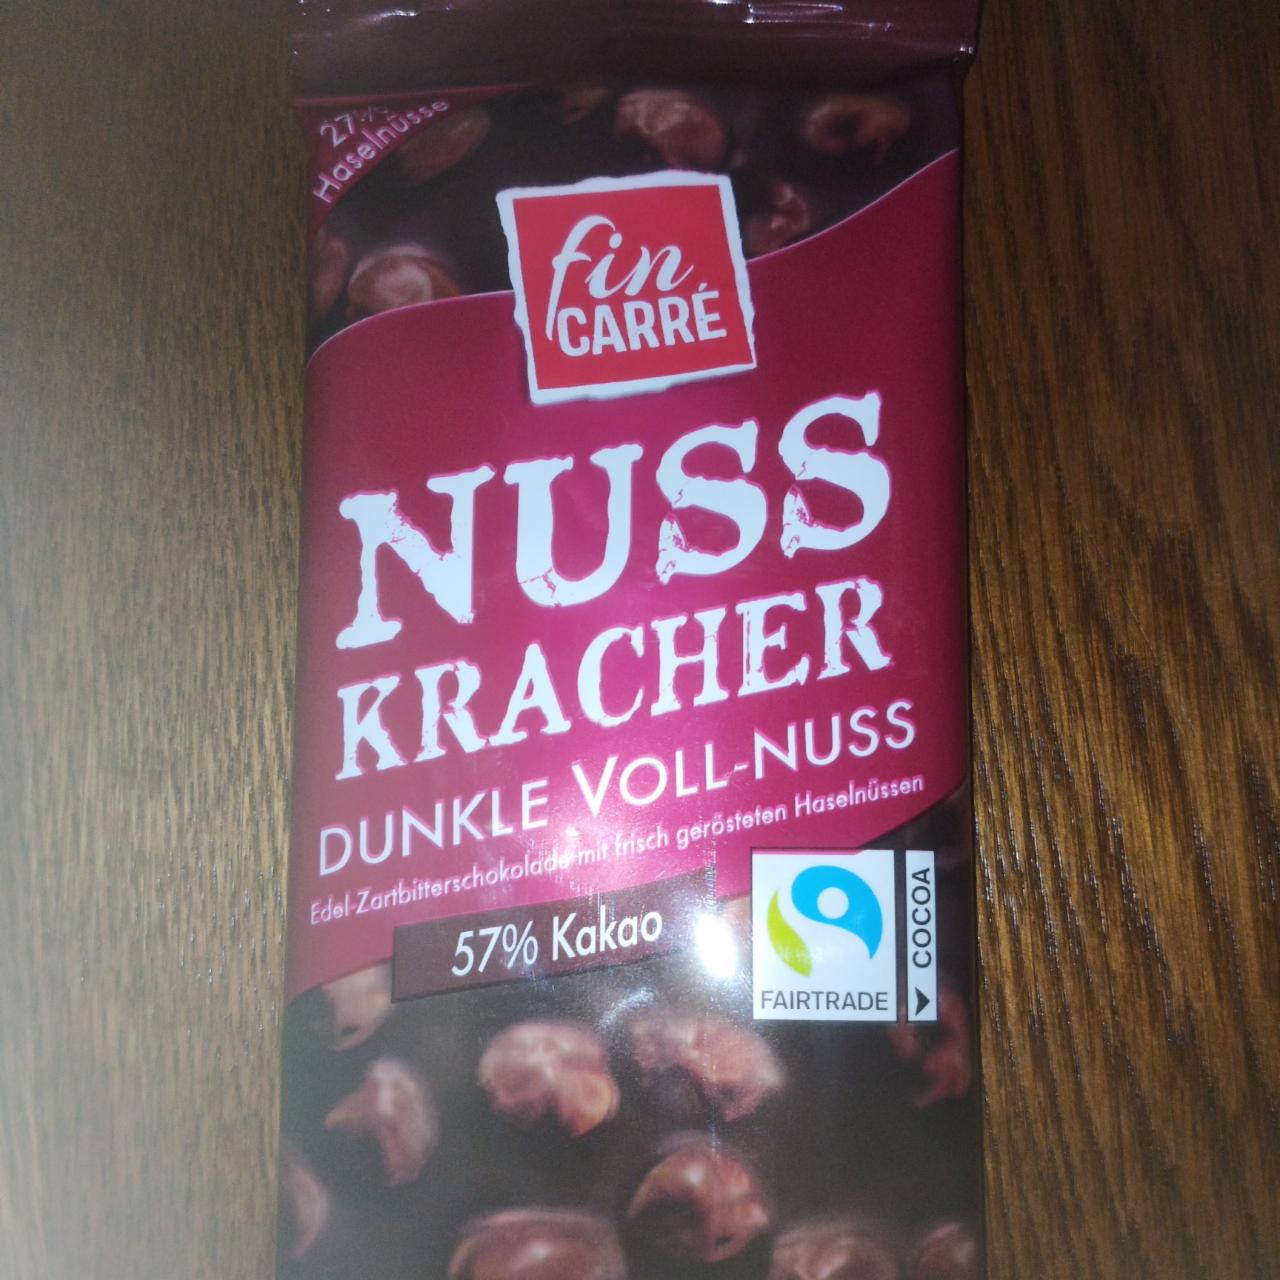 Фото - Nuss Kracher Dunkle Voll-Nuss 57% Kakao Fin Carré